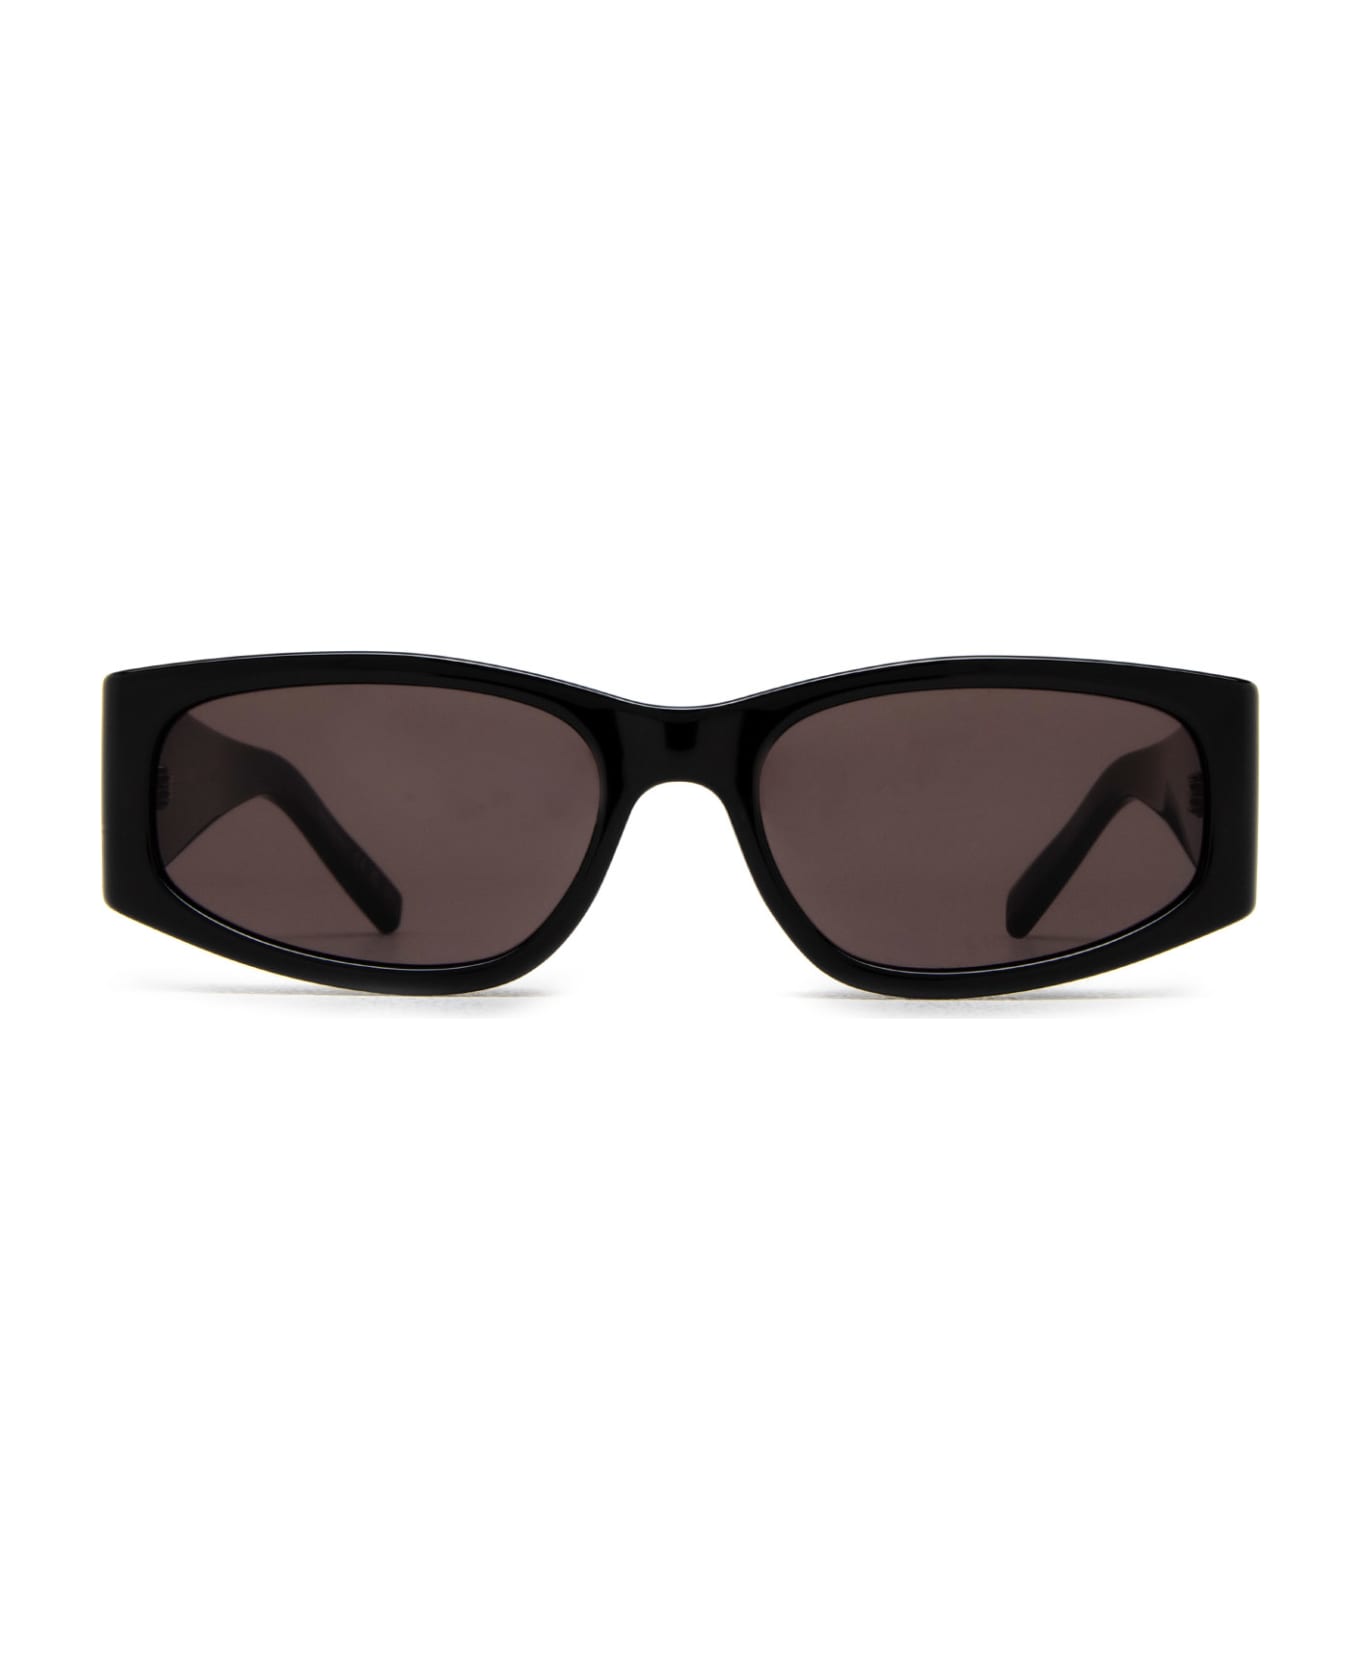 Saint Laurent Eyewear Sl 329 Black Sunglasses - Black